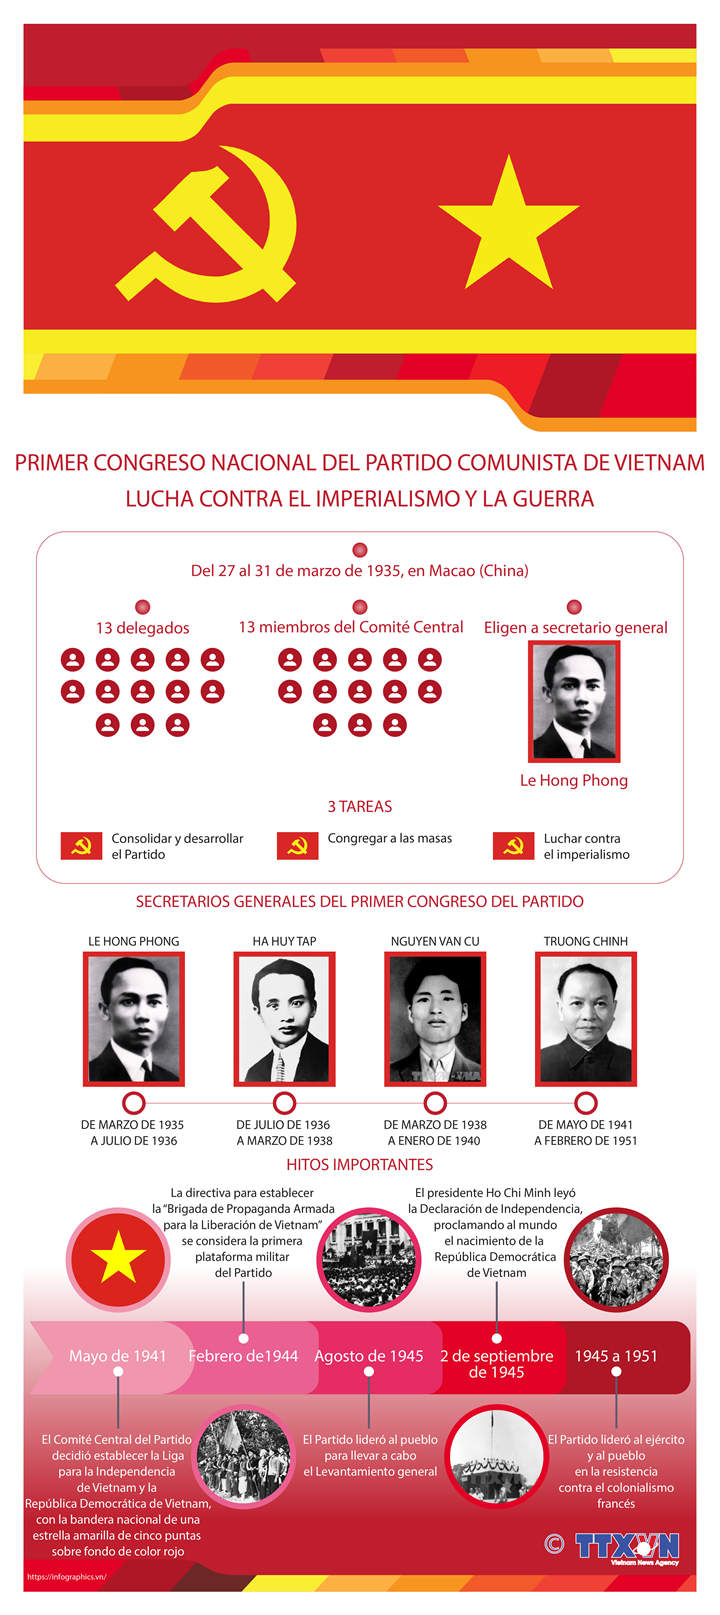 PRIMER CONGRESO NACIONAL DEL PARTIDO COMUNISTA DE VIETNAM